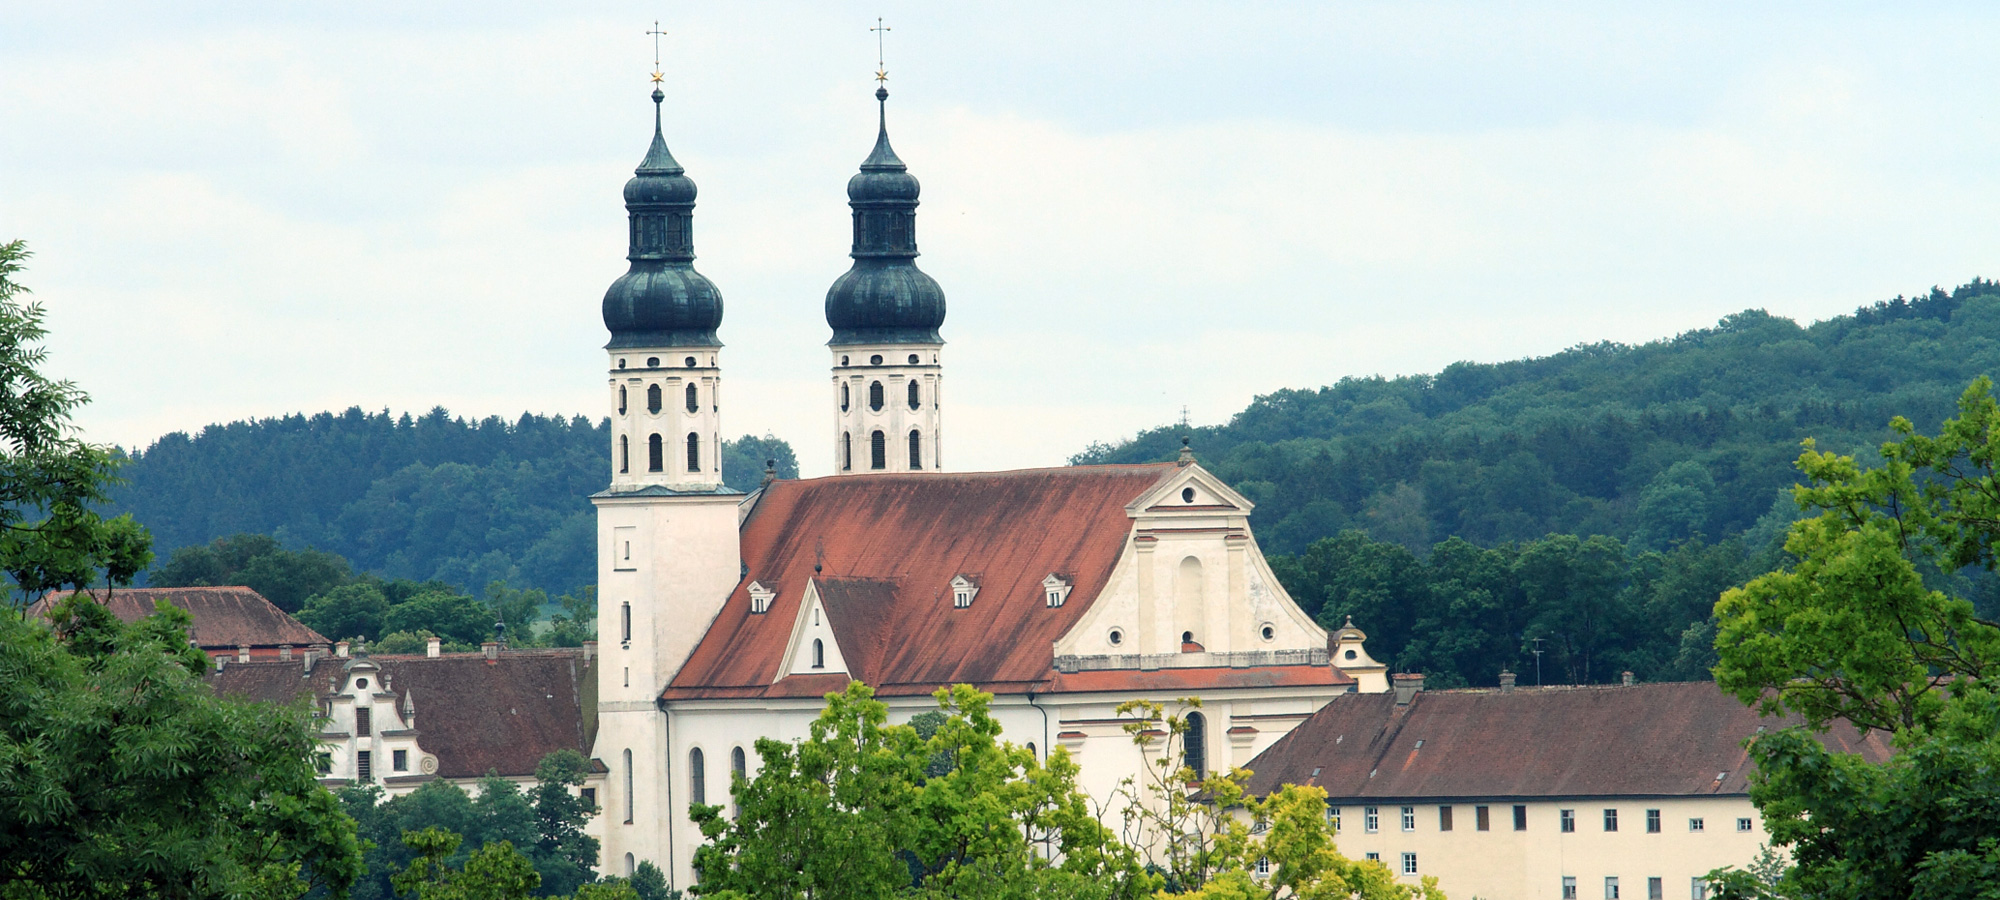 Das Kloster Obermarchtal liegt zwischen den Gemeinden Ehingen und Riedlingen,